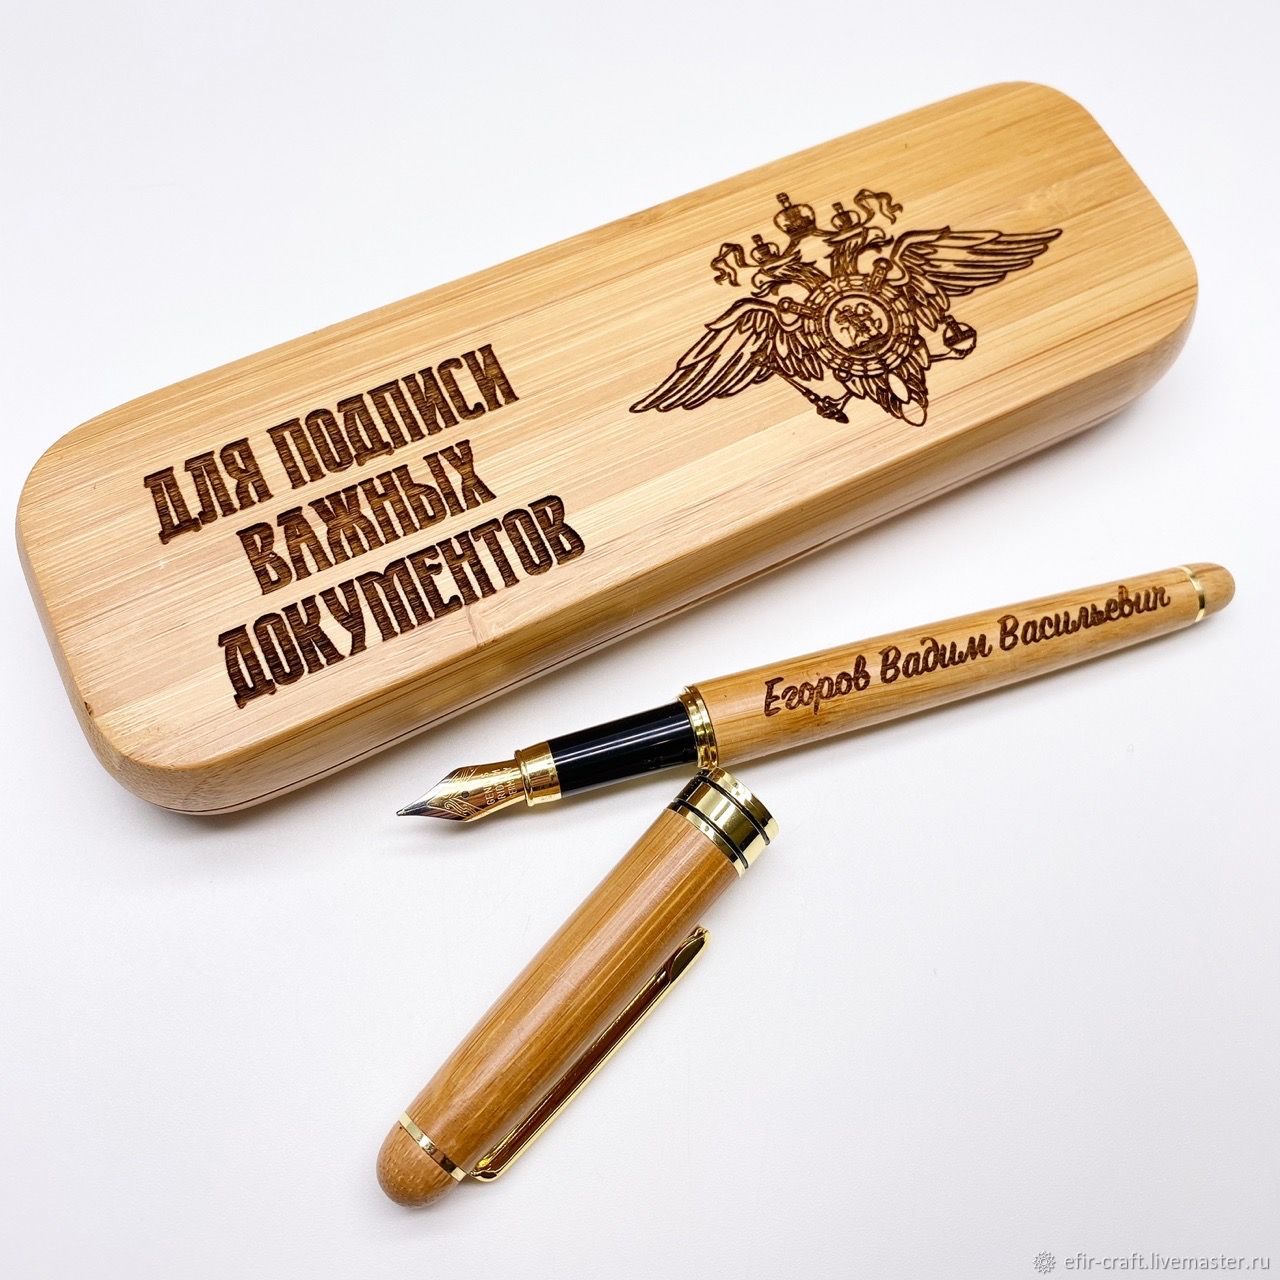 Именная ручка в подарок. Именная ручка. Деревянная ручка именная. Именная ручка с гравировкой. Ручка именная в подарок.